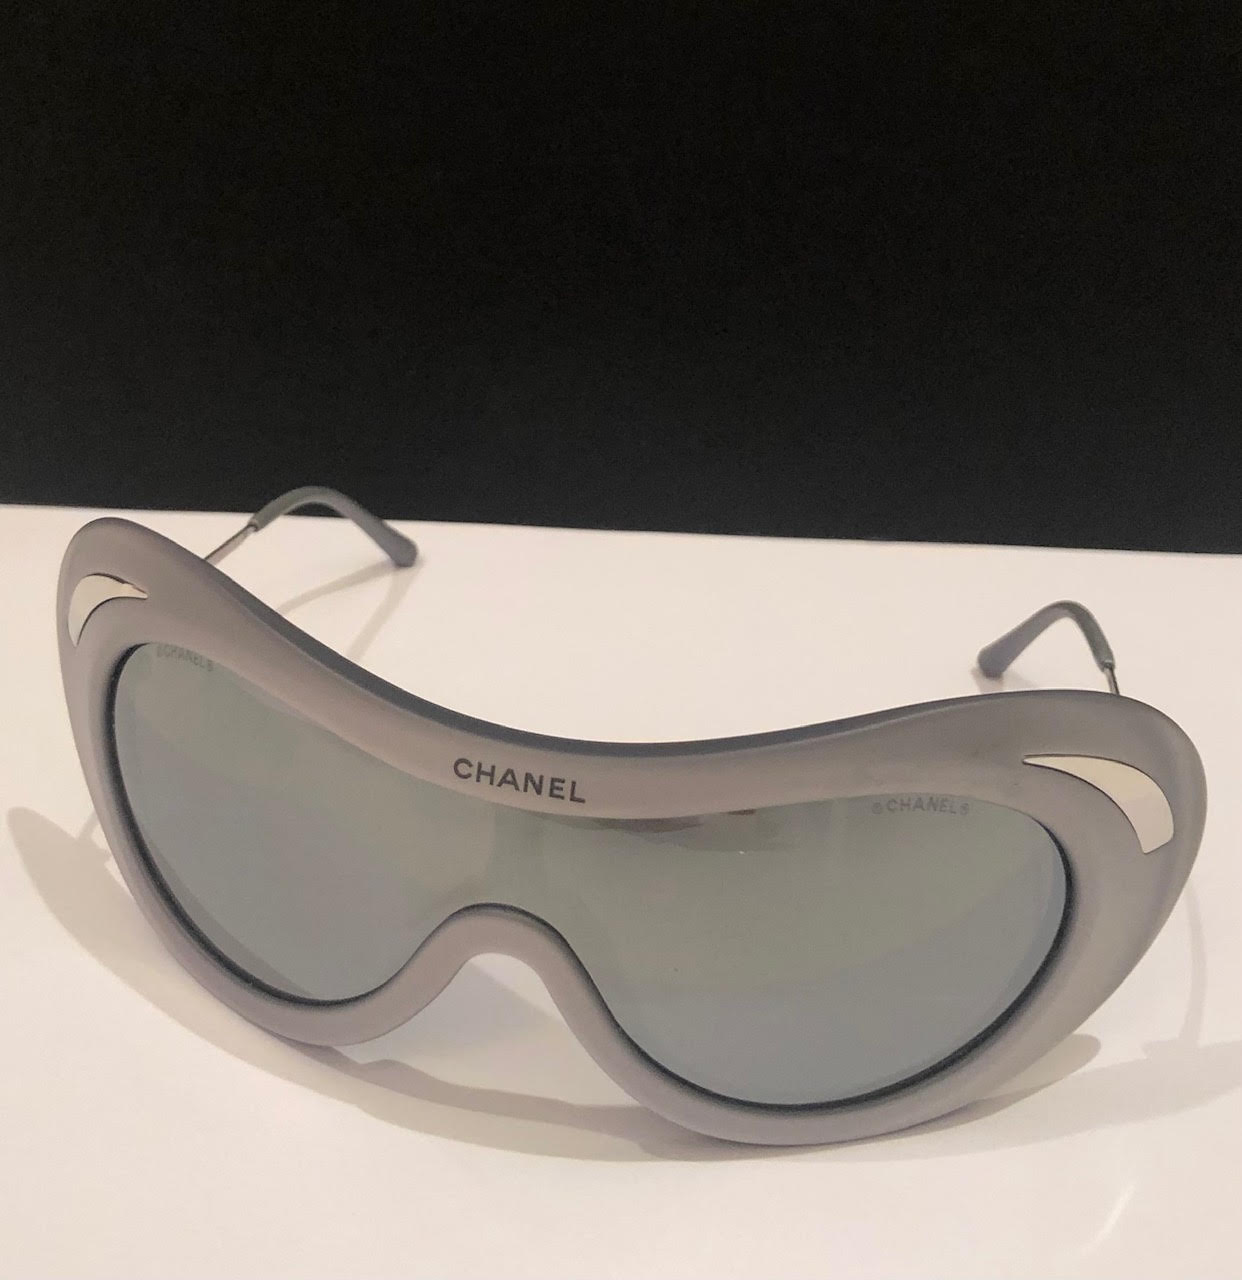 Sunglasses Chanel Black in Plastic - 36111707